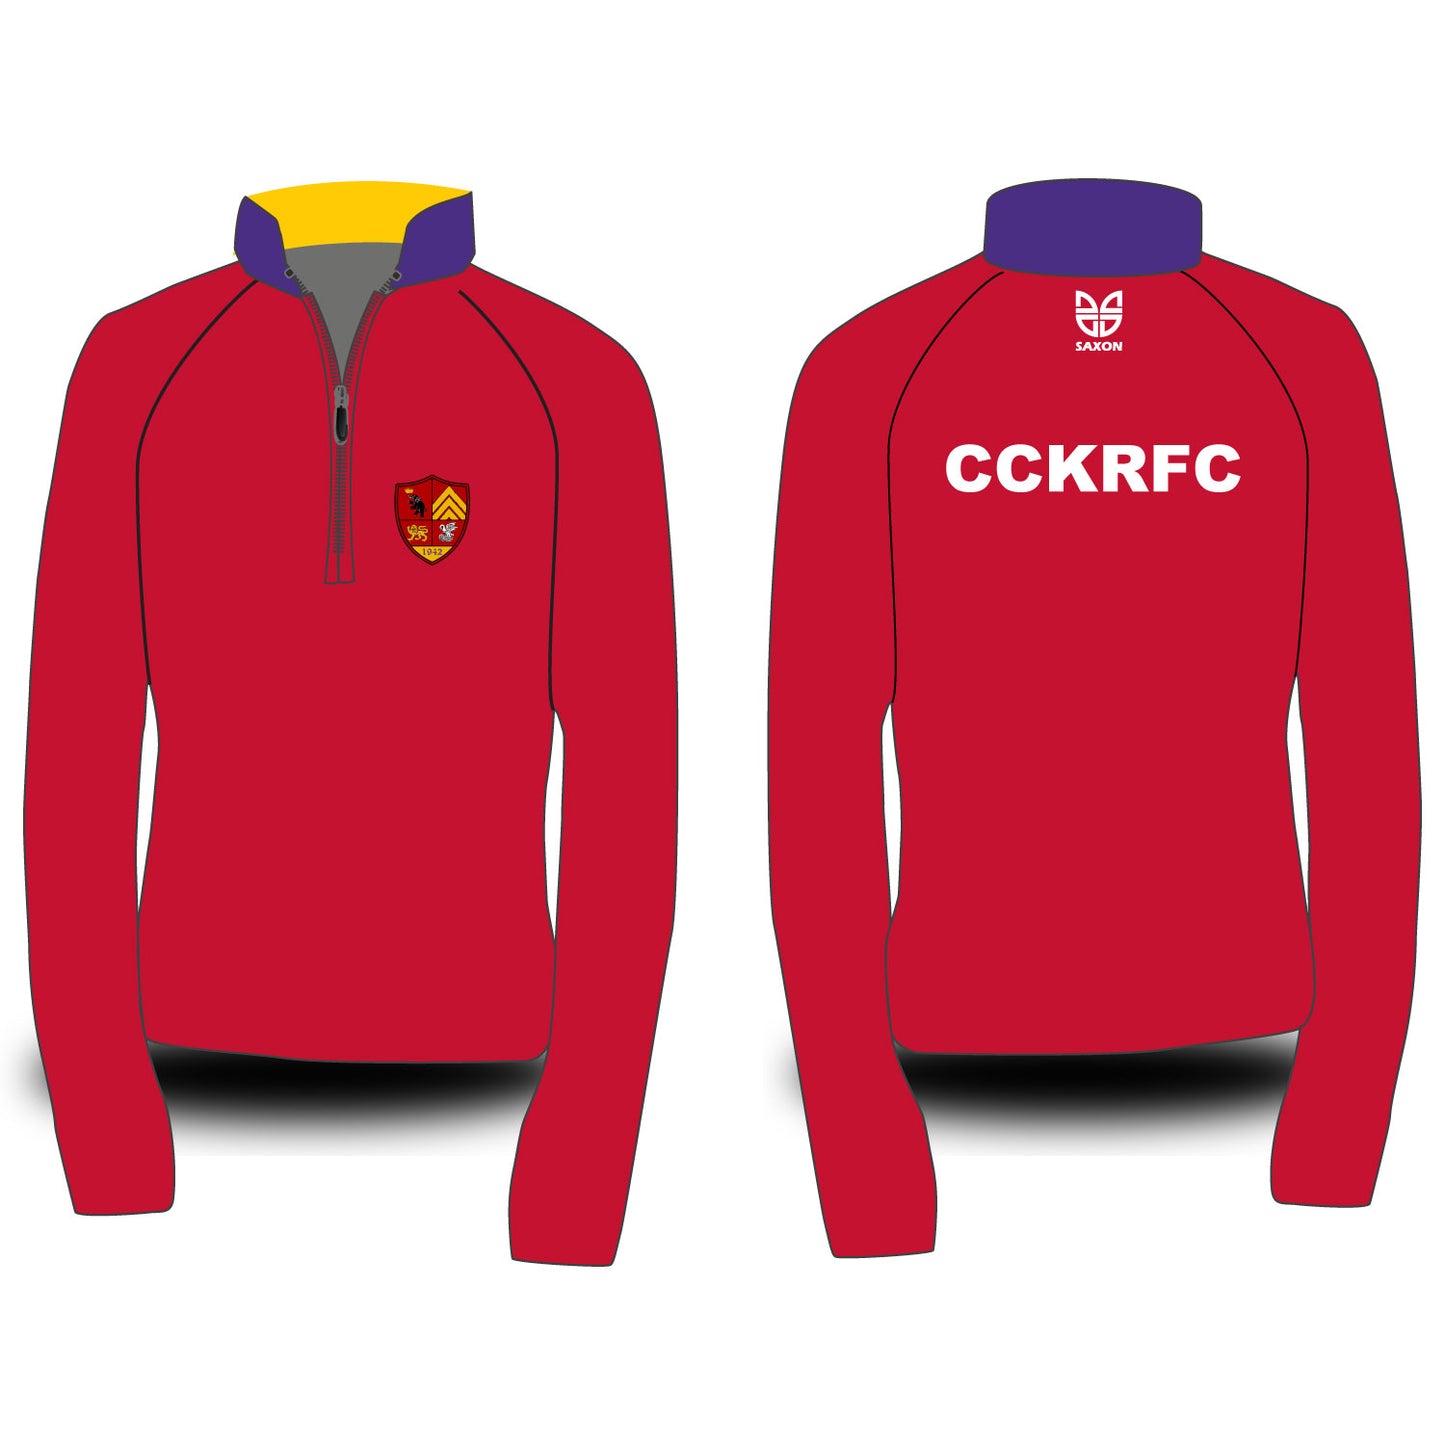 CCKRFC Sublimated Fleece